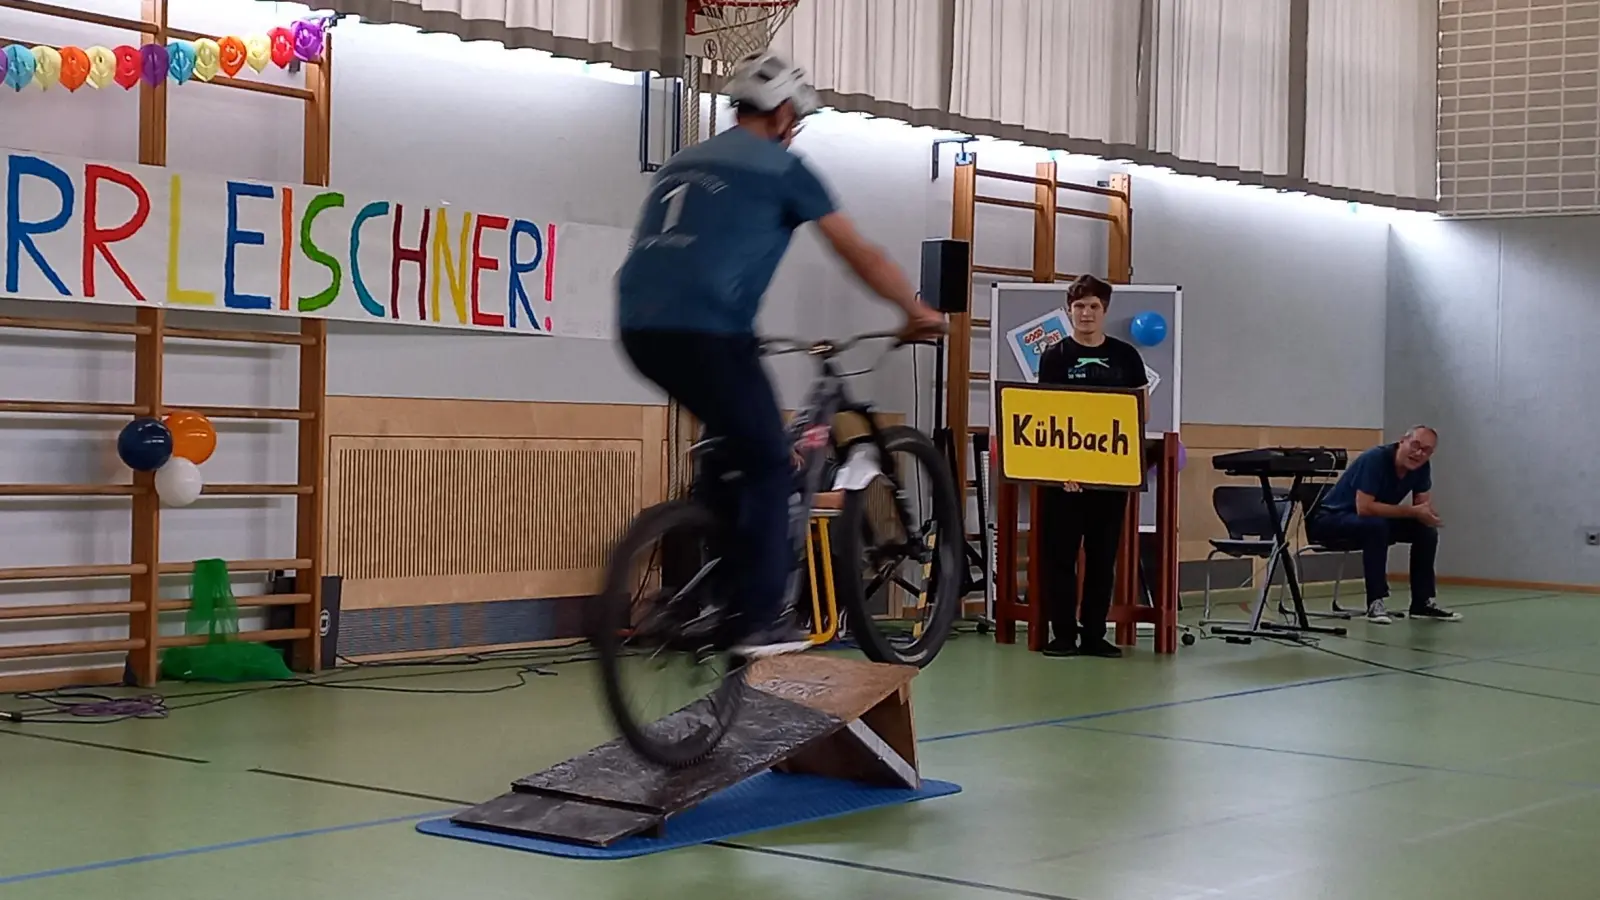 <b>Diesen Absprung</b> hat er geschafft: Peter Leischner wechselt als Schulleiter von Hollenbach nach Kühbach. Links: „Enduro-Rider Philip”, der den Sprung vormachte.  (Foto: Ines Speck)